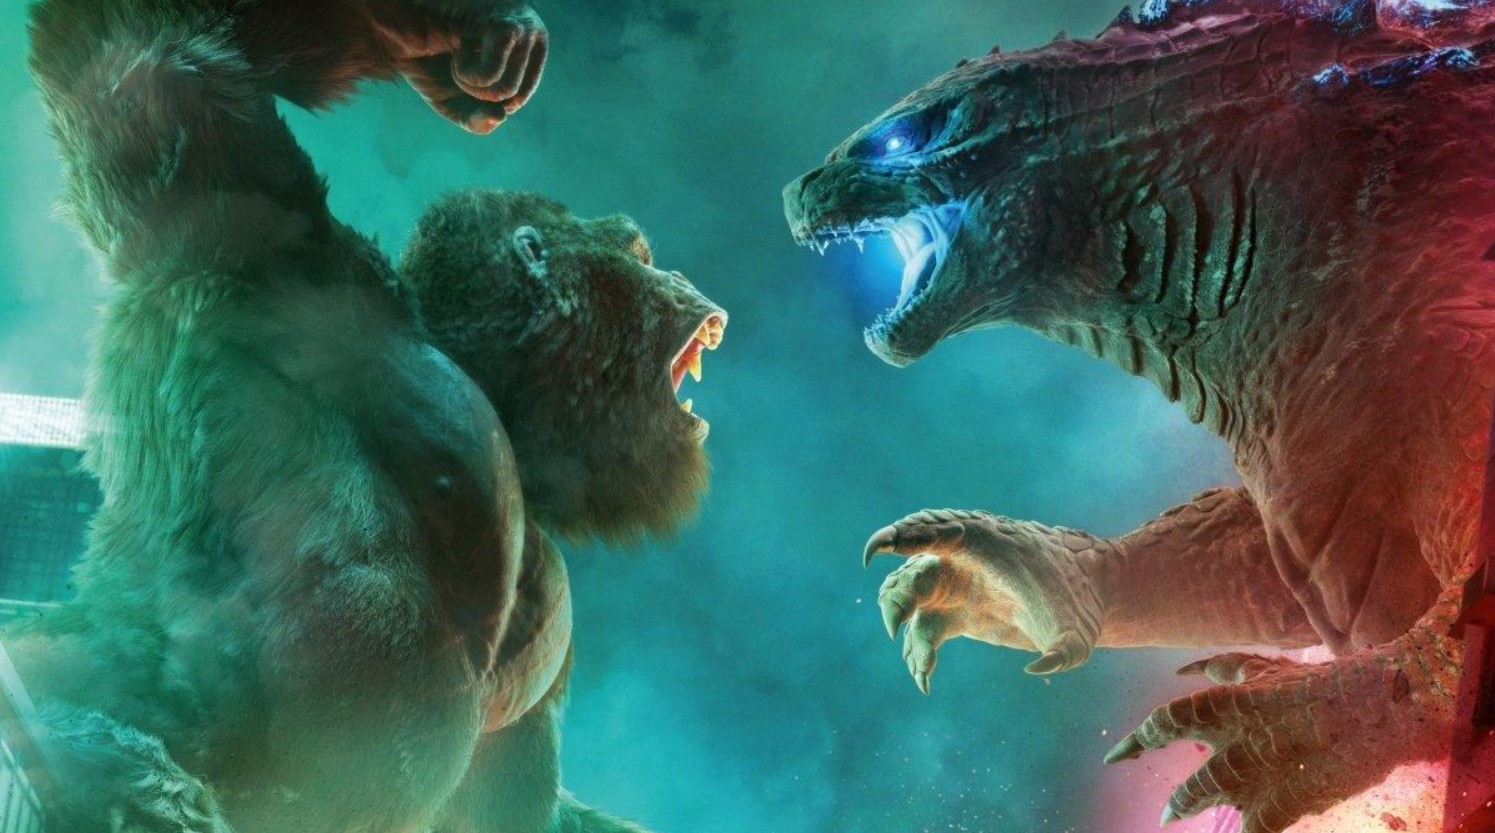 Godzilla Vs Kong Sequel Film Confirms 2024 Release! Plot Details